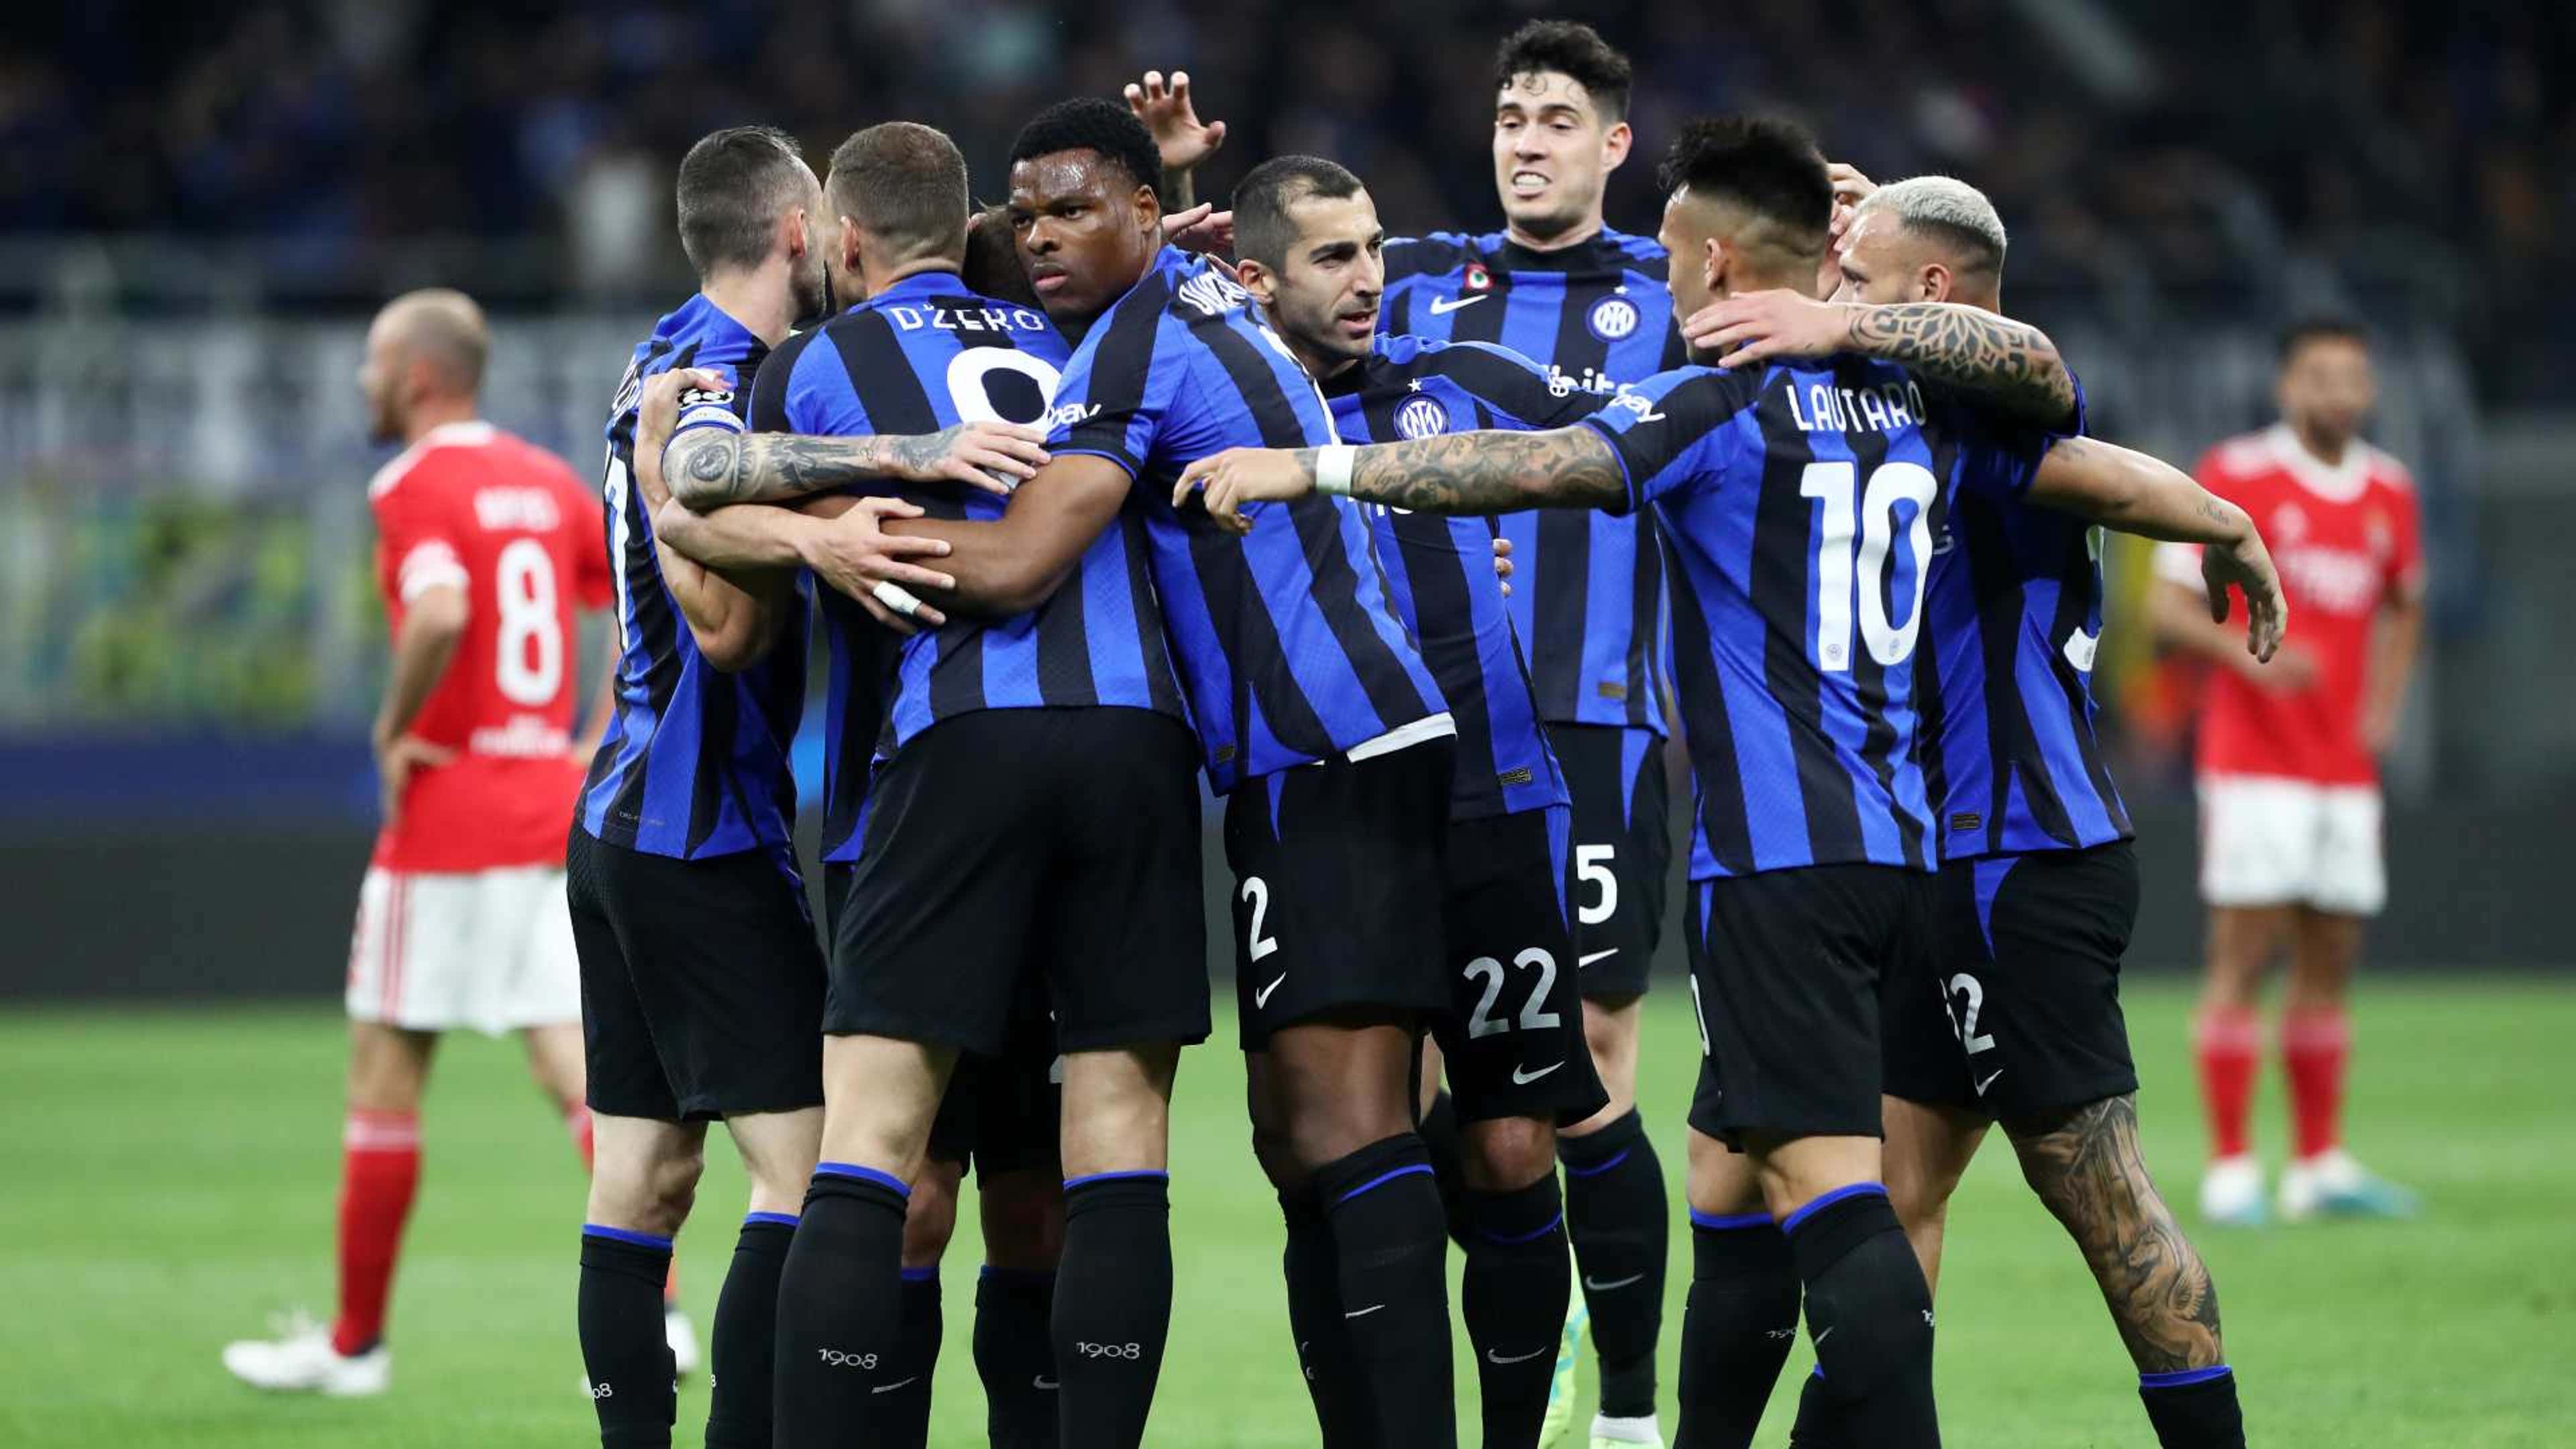 A tabela de jogos da Inter de Milão até a final da Champions League